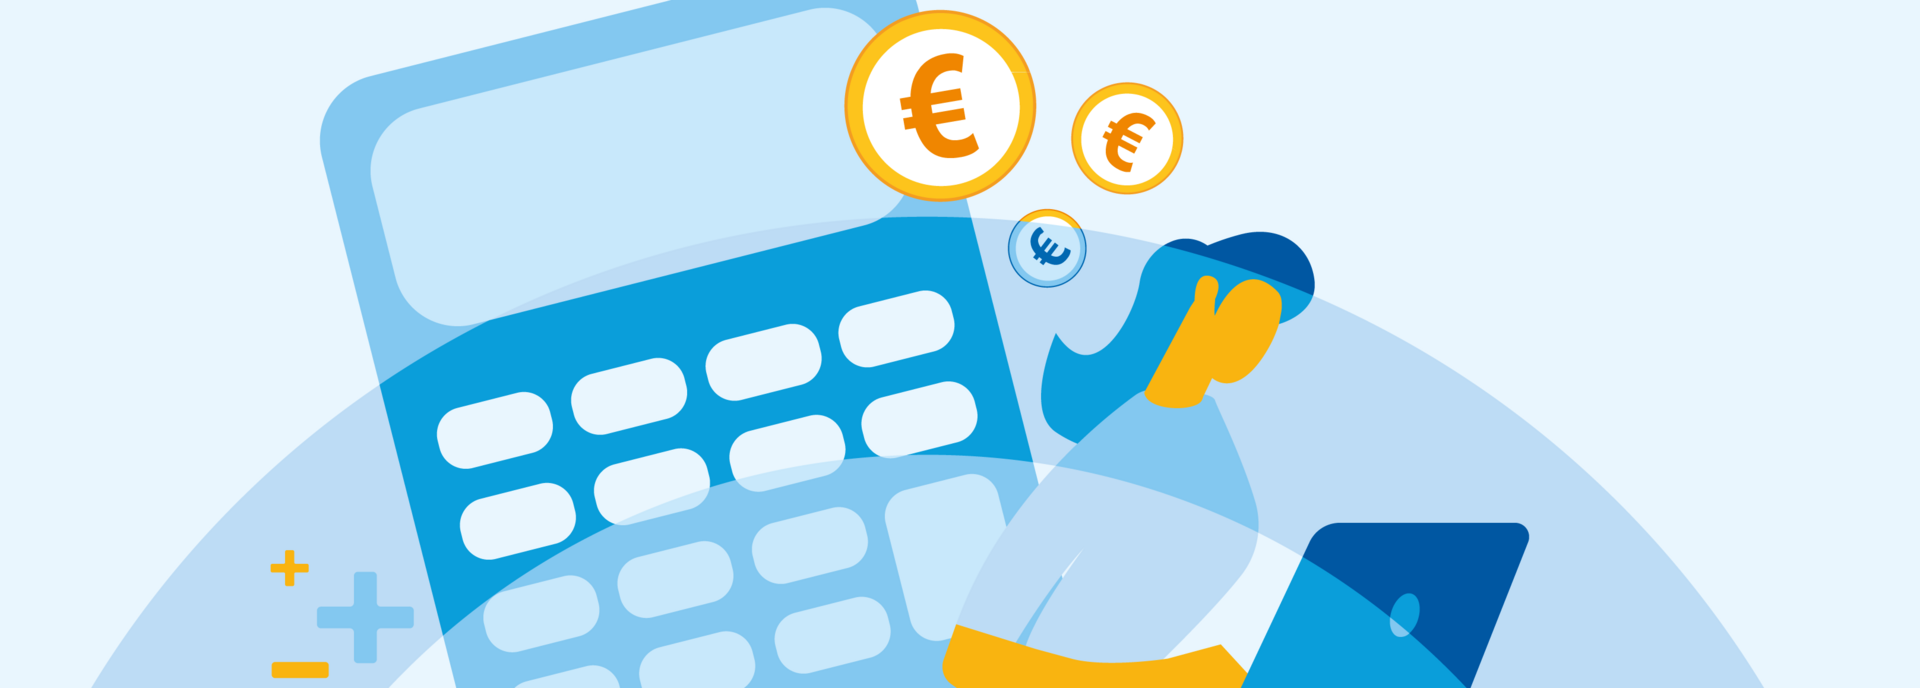 Grafik eines übergroßen Taschenrechners in Hintergrund, davor sitzt eine Person am Laptop, über dem Bild verteilt fliegen Euro-Münzen